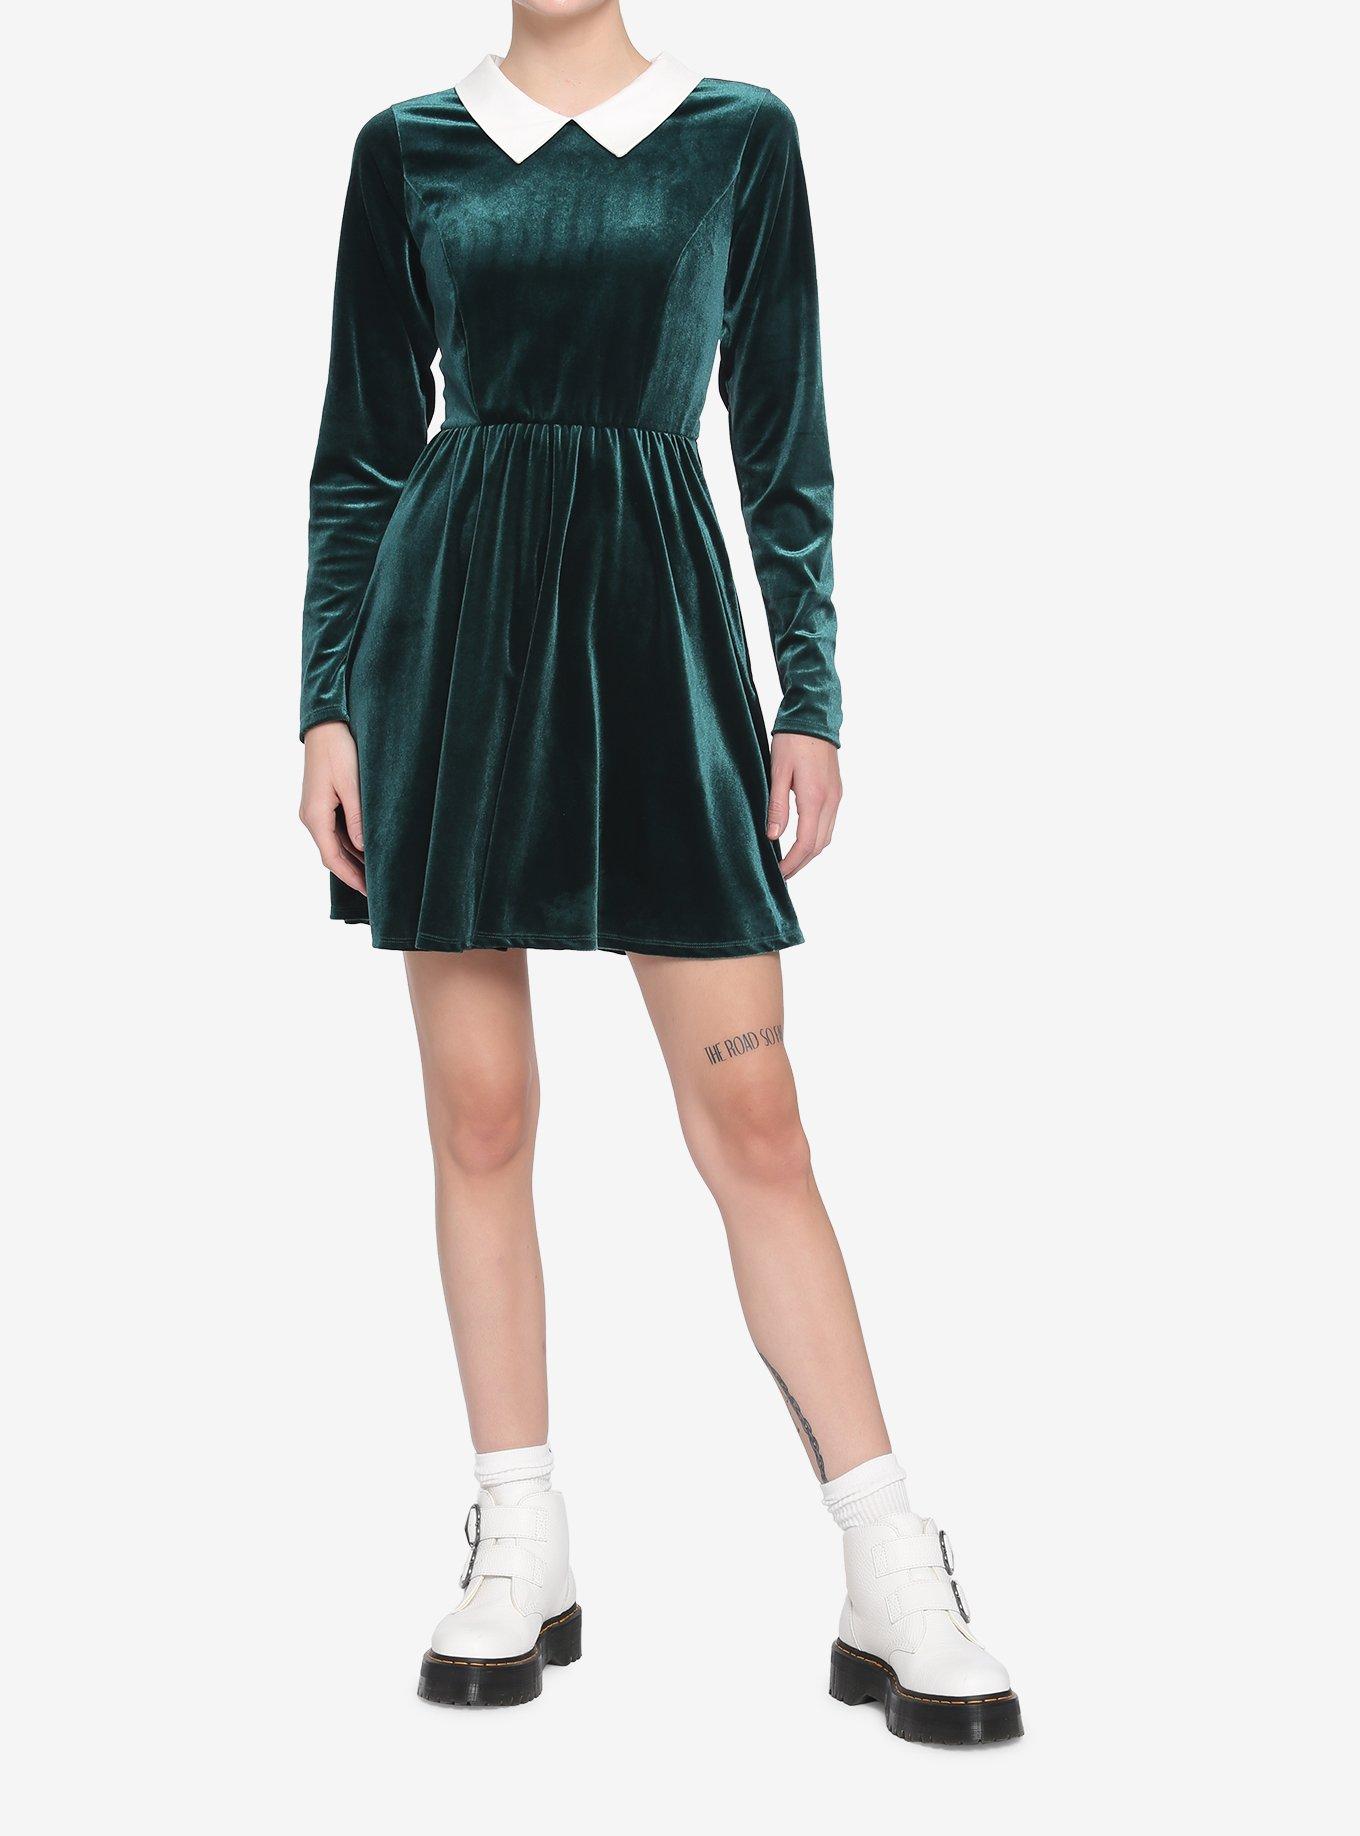 Green Velvet Collared Long-Sleeve Dress, GREEN, alternate